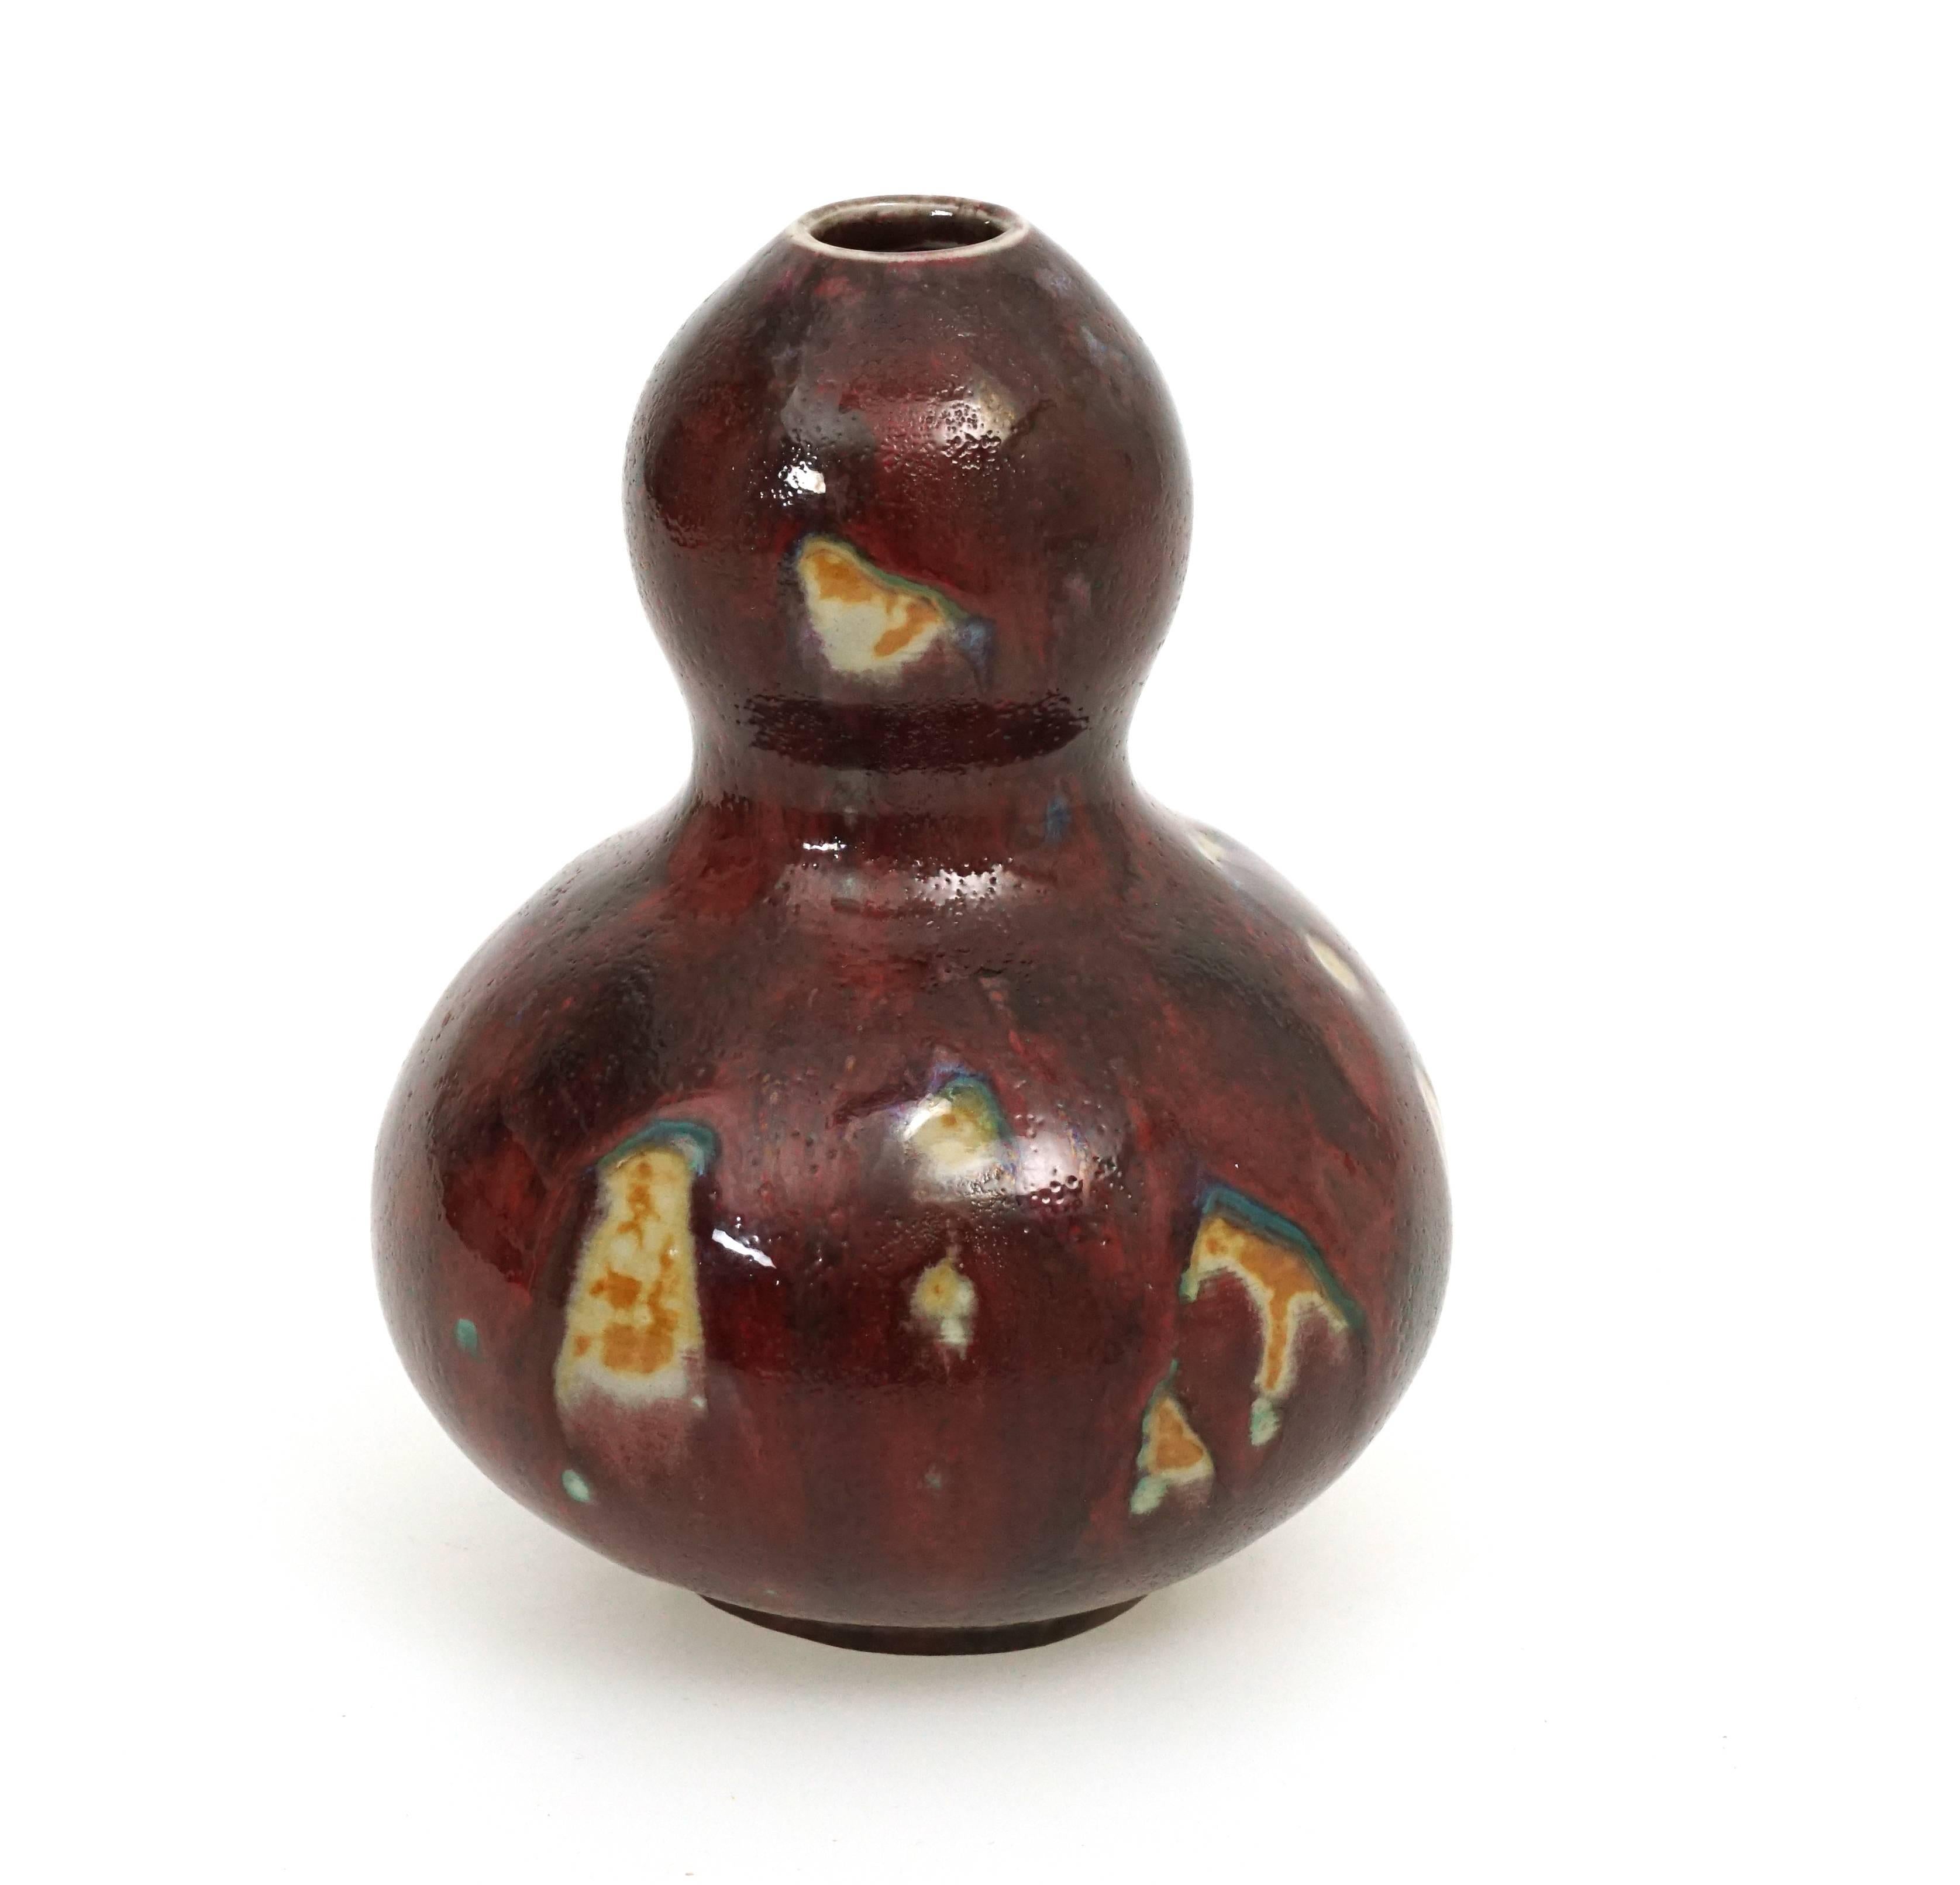 Axel Salto, 1889-1961, for Royal Copenhagen. Calabash-shaped vase, stoneware. Rare Oxblood glaze. Signed 